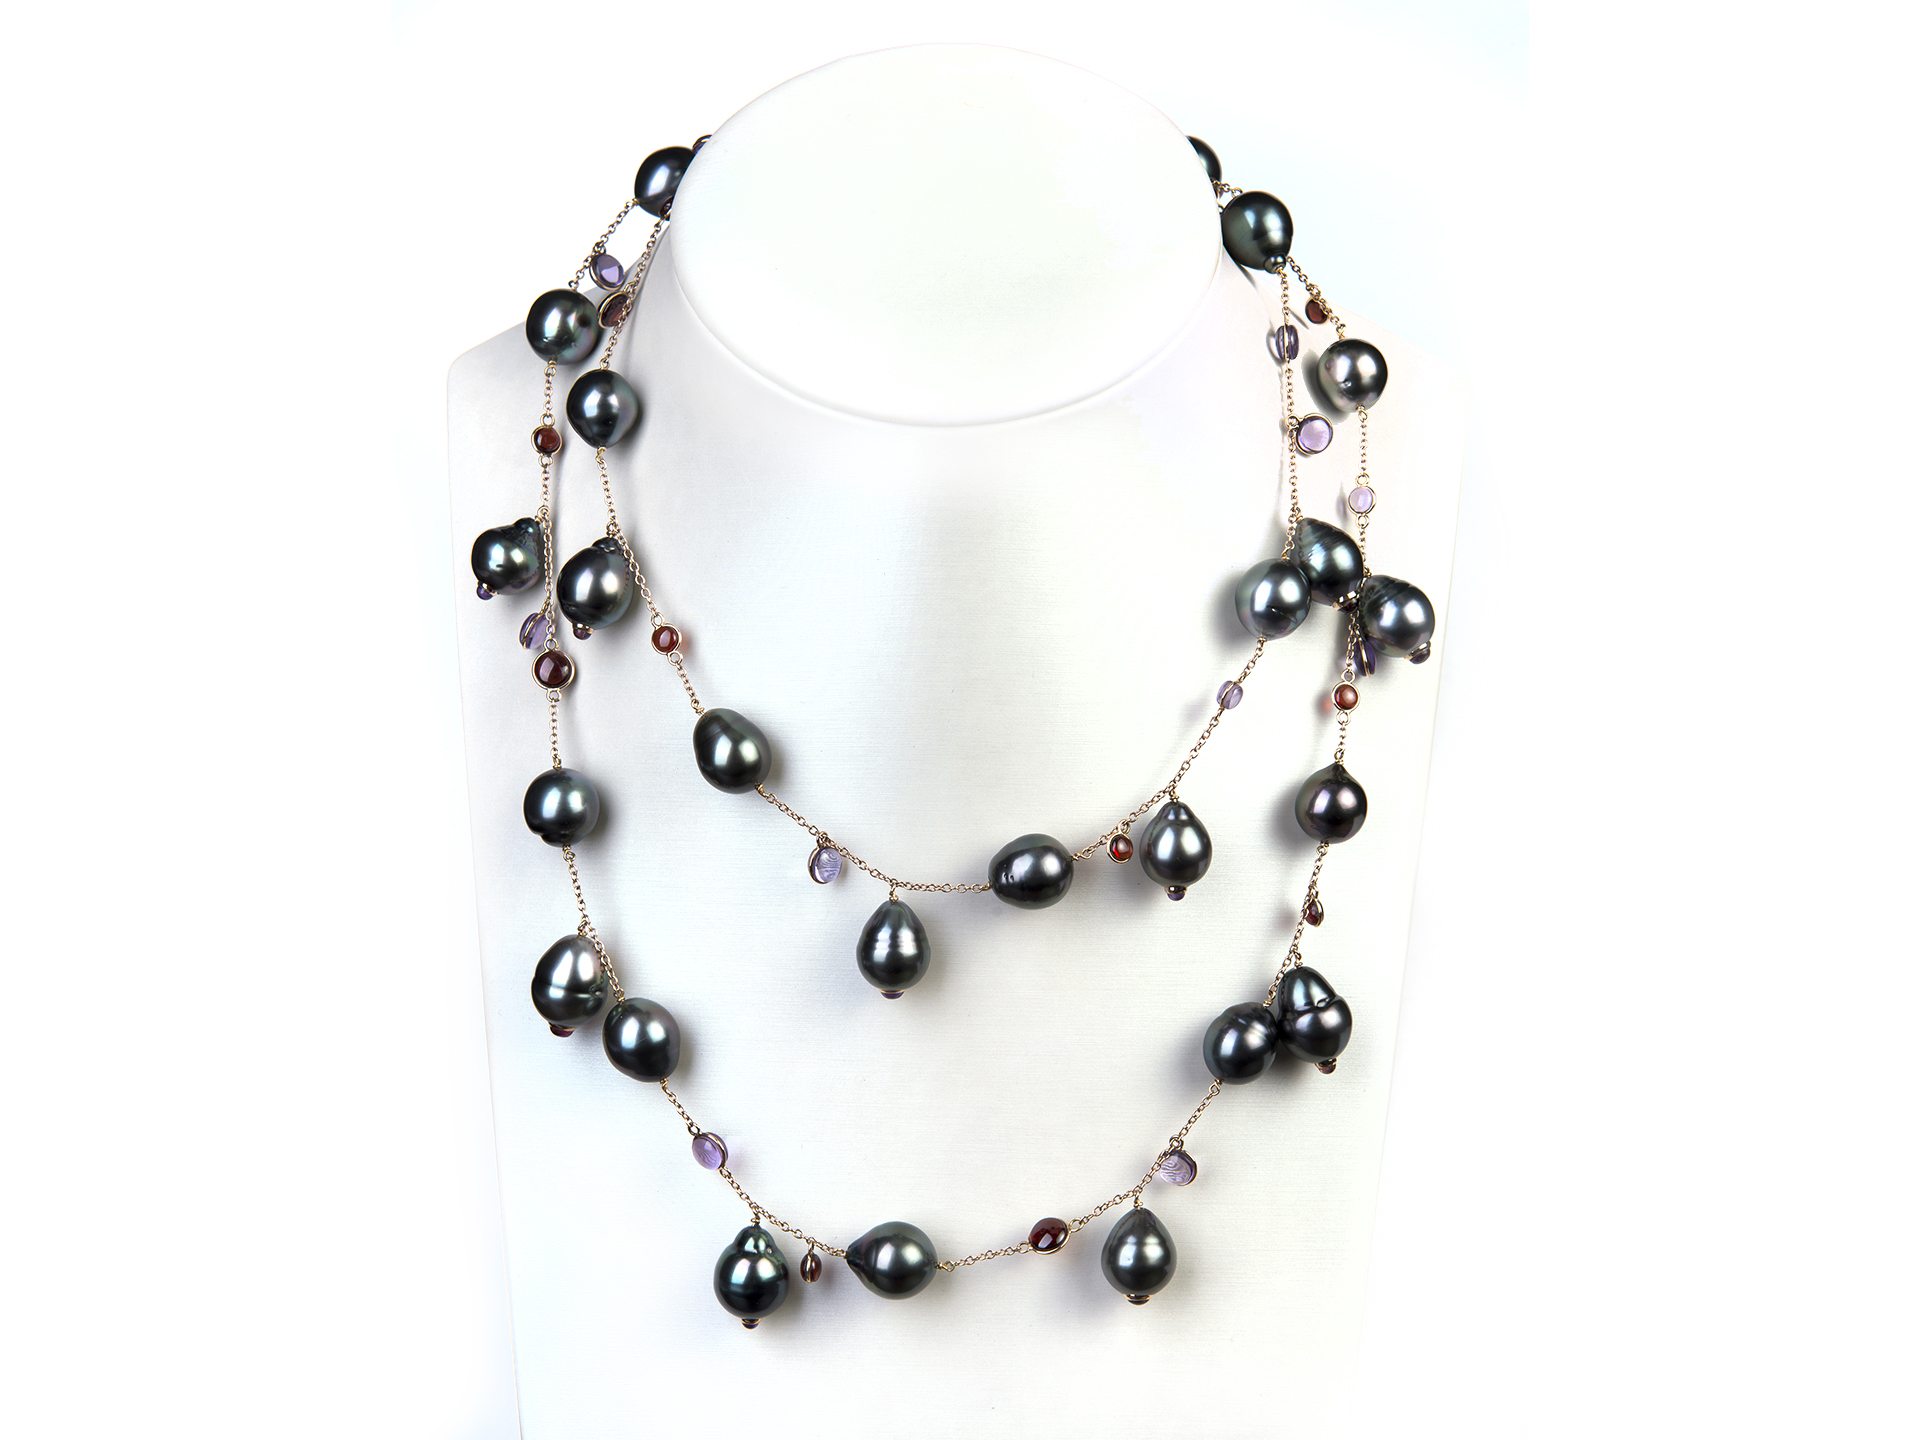 La cura dei gioielli: le perle sono un materiale organico, da indossare con la giusta attenzione. Alcune indicazioni per la cura delle perle